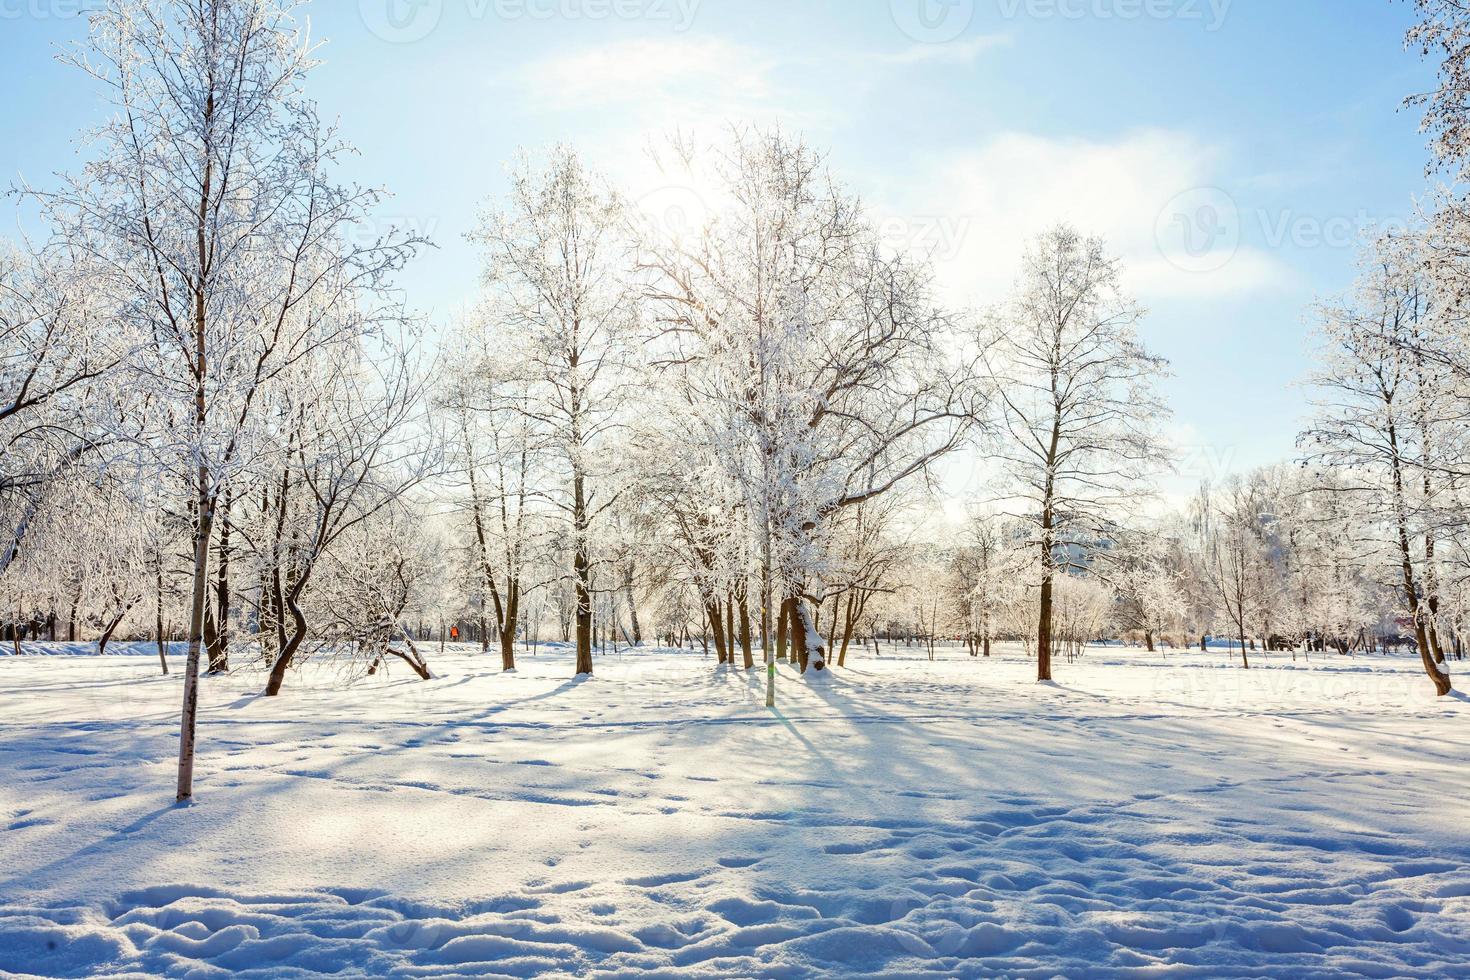 árboles helados en el bosque nevado, clima frío en la mañana soleada. tranquila naturaleza invernal a la luz del sol. jardín o parque de invierno natural inspirador. fondo de paisaje de naturaleza de ecología fresca y pacífica. foto